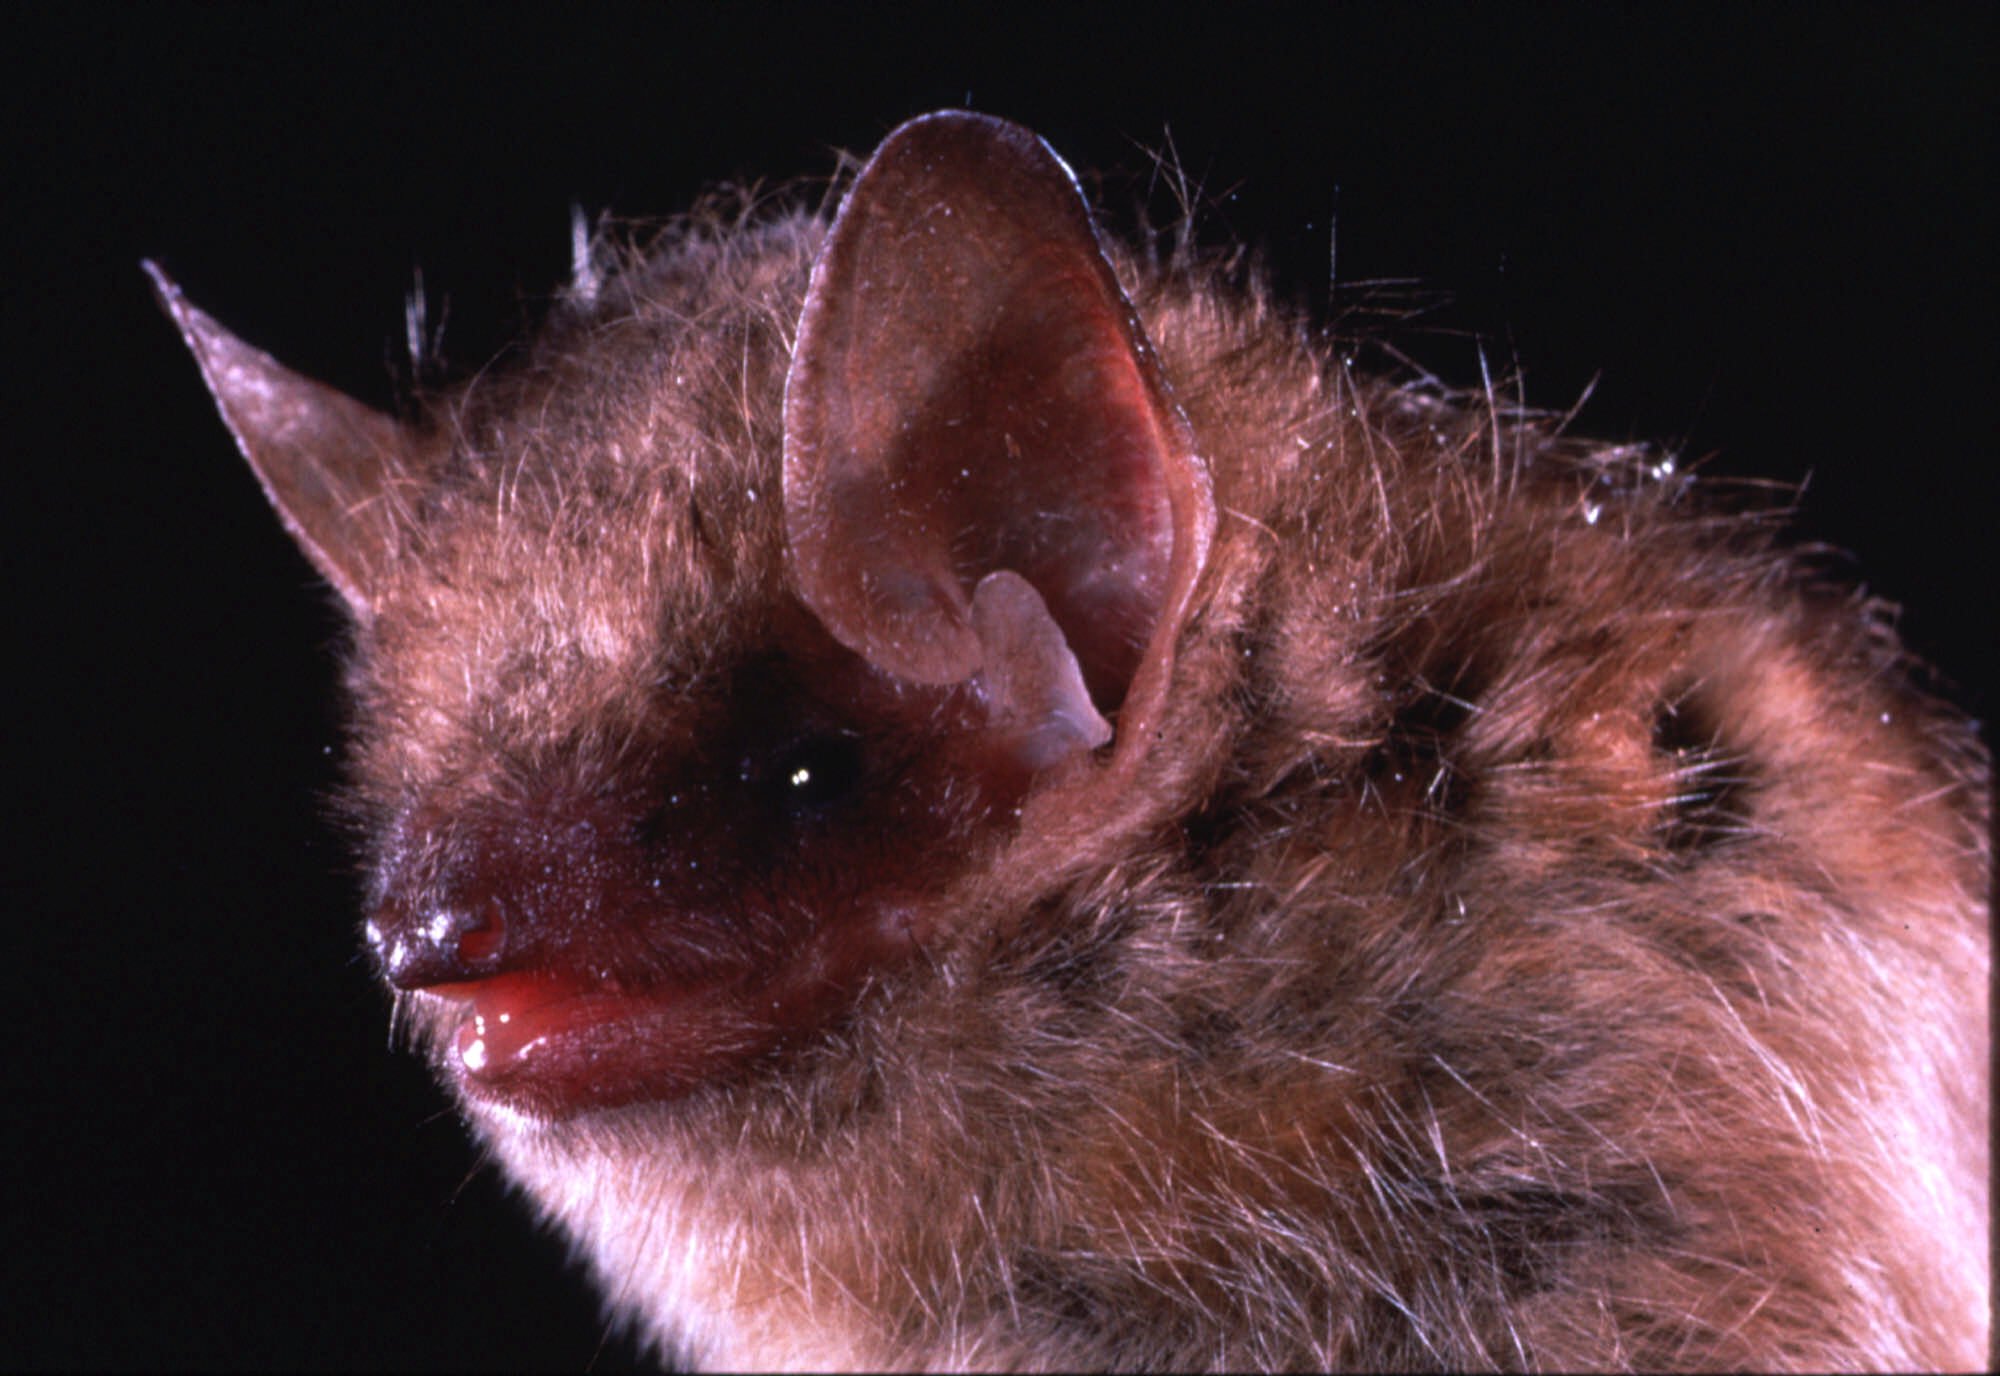 Rabid bat found in Gypsum – The Denver Post